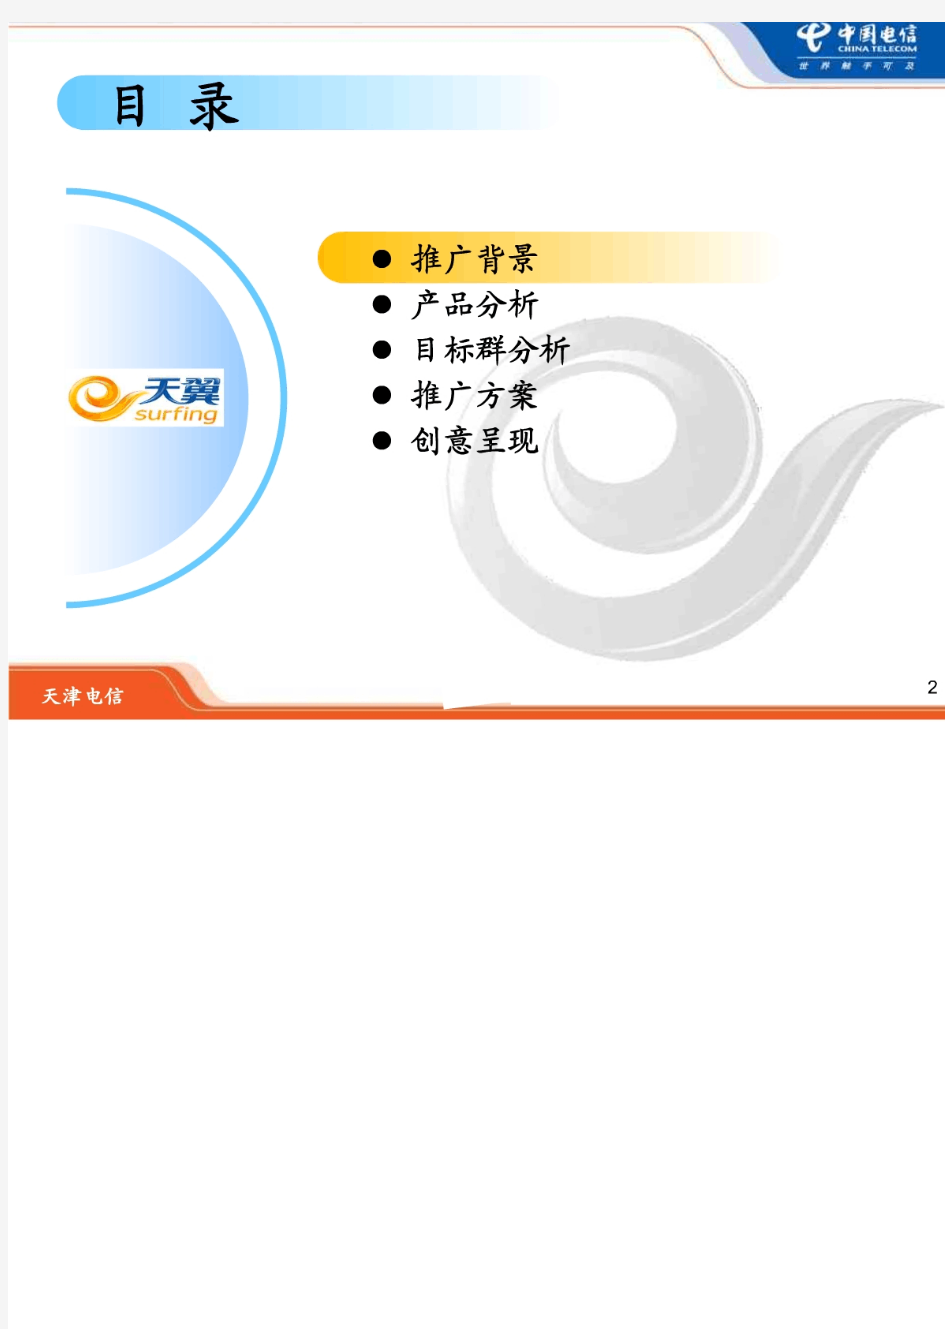 中国电信新版网上营业厅厅推广方案